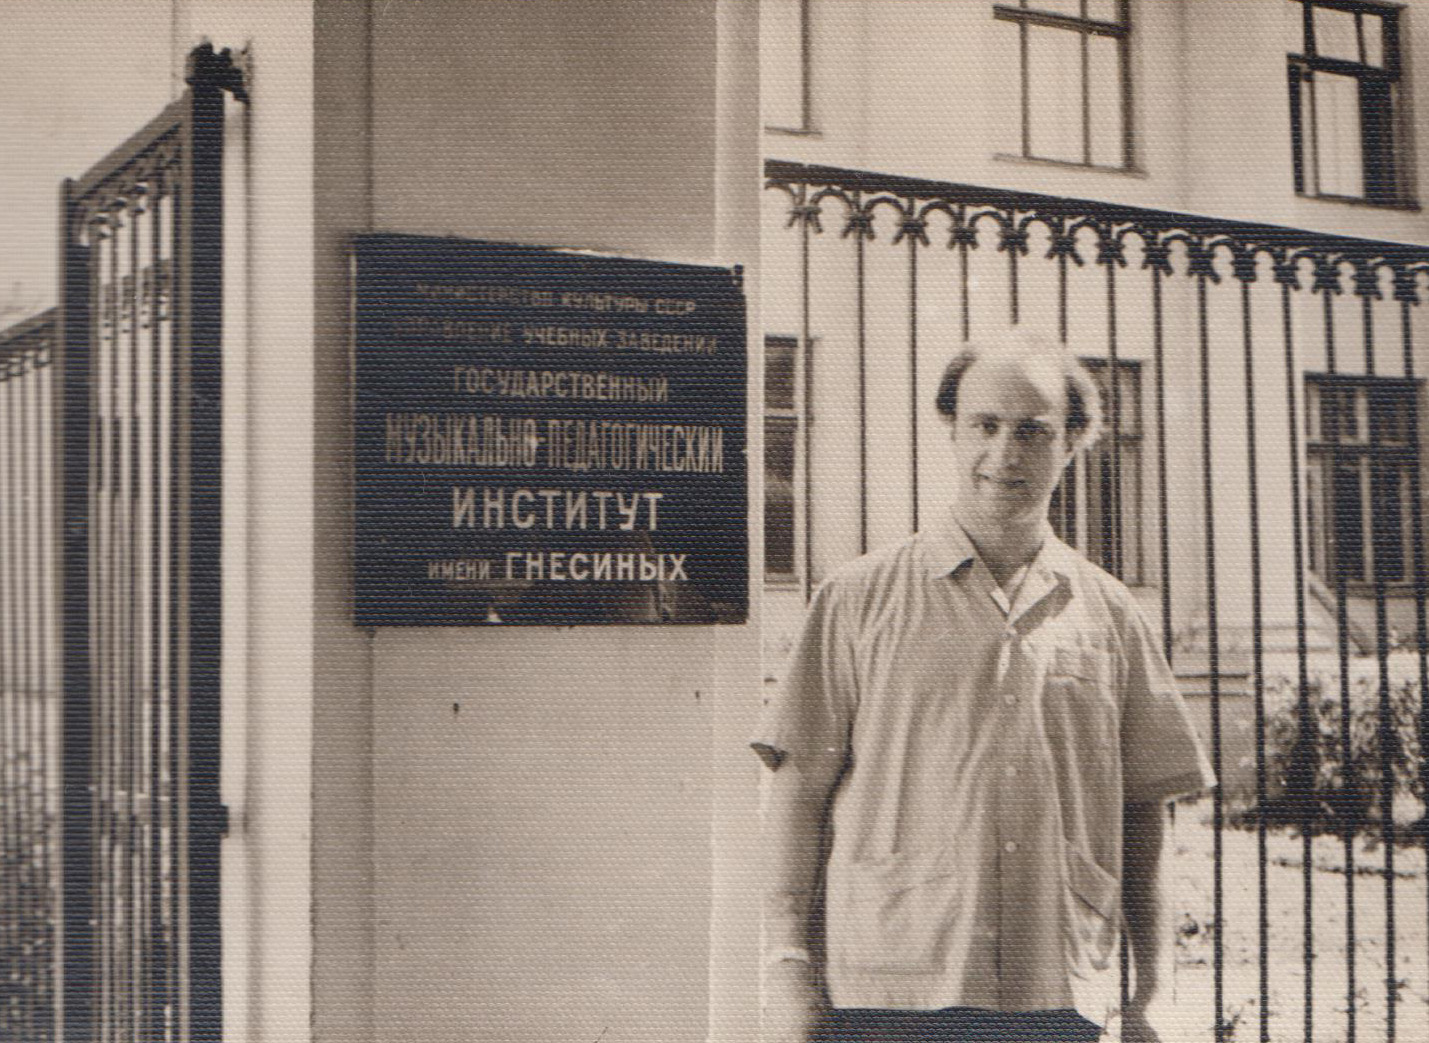 Ю. Лихачев, экзамены в Гнесиных, 1962